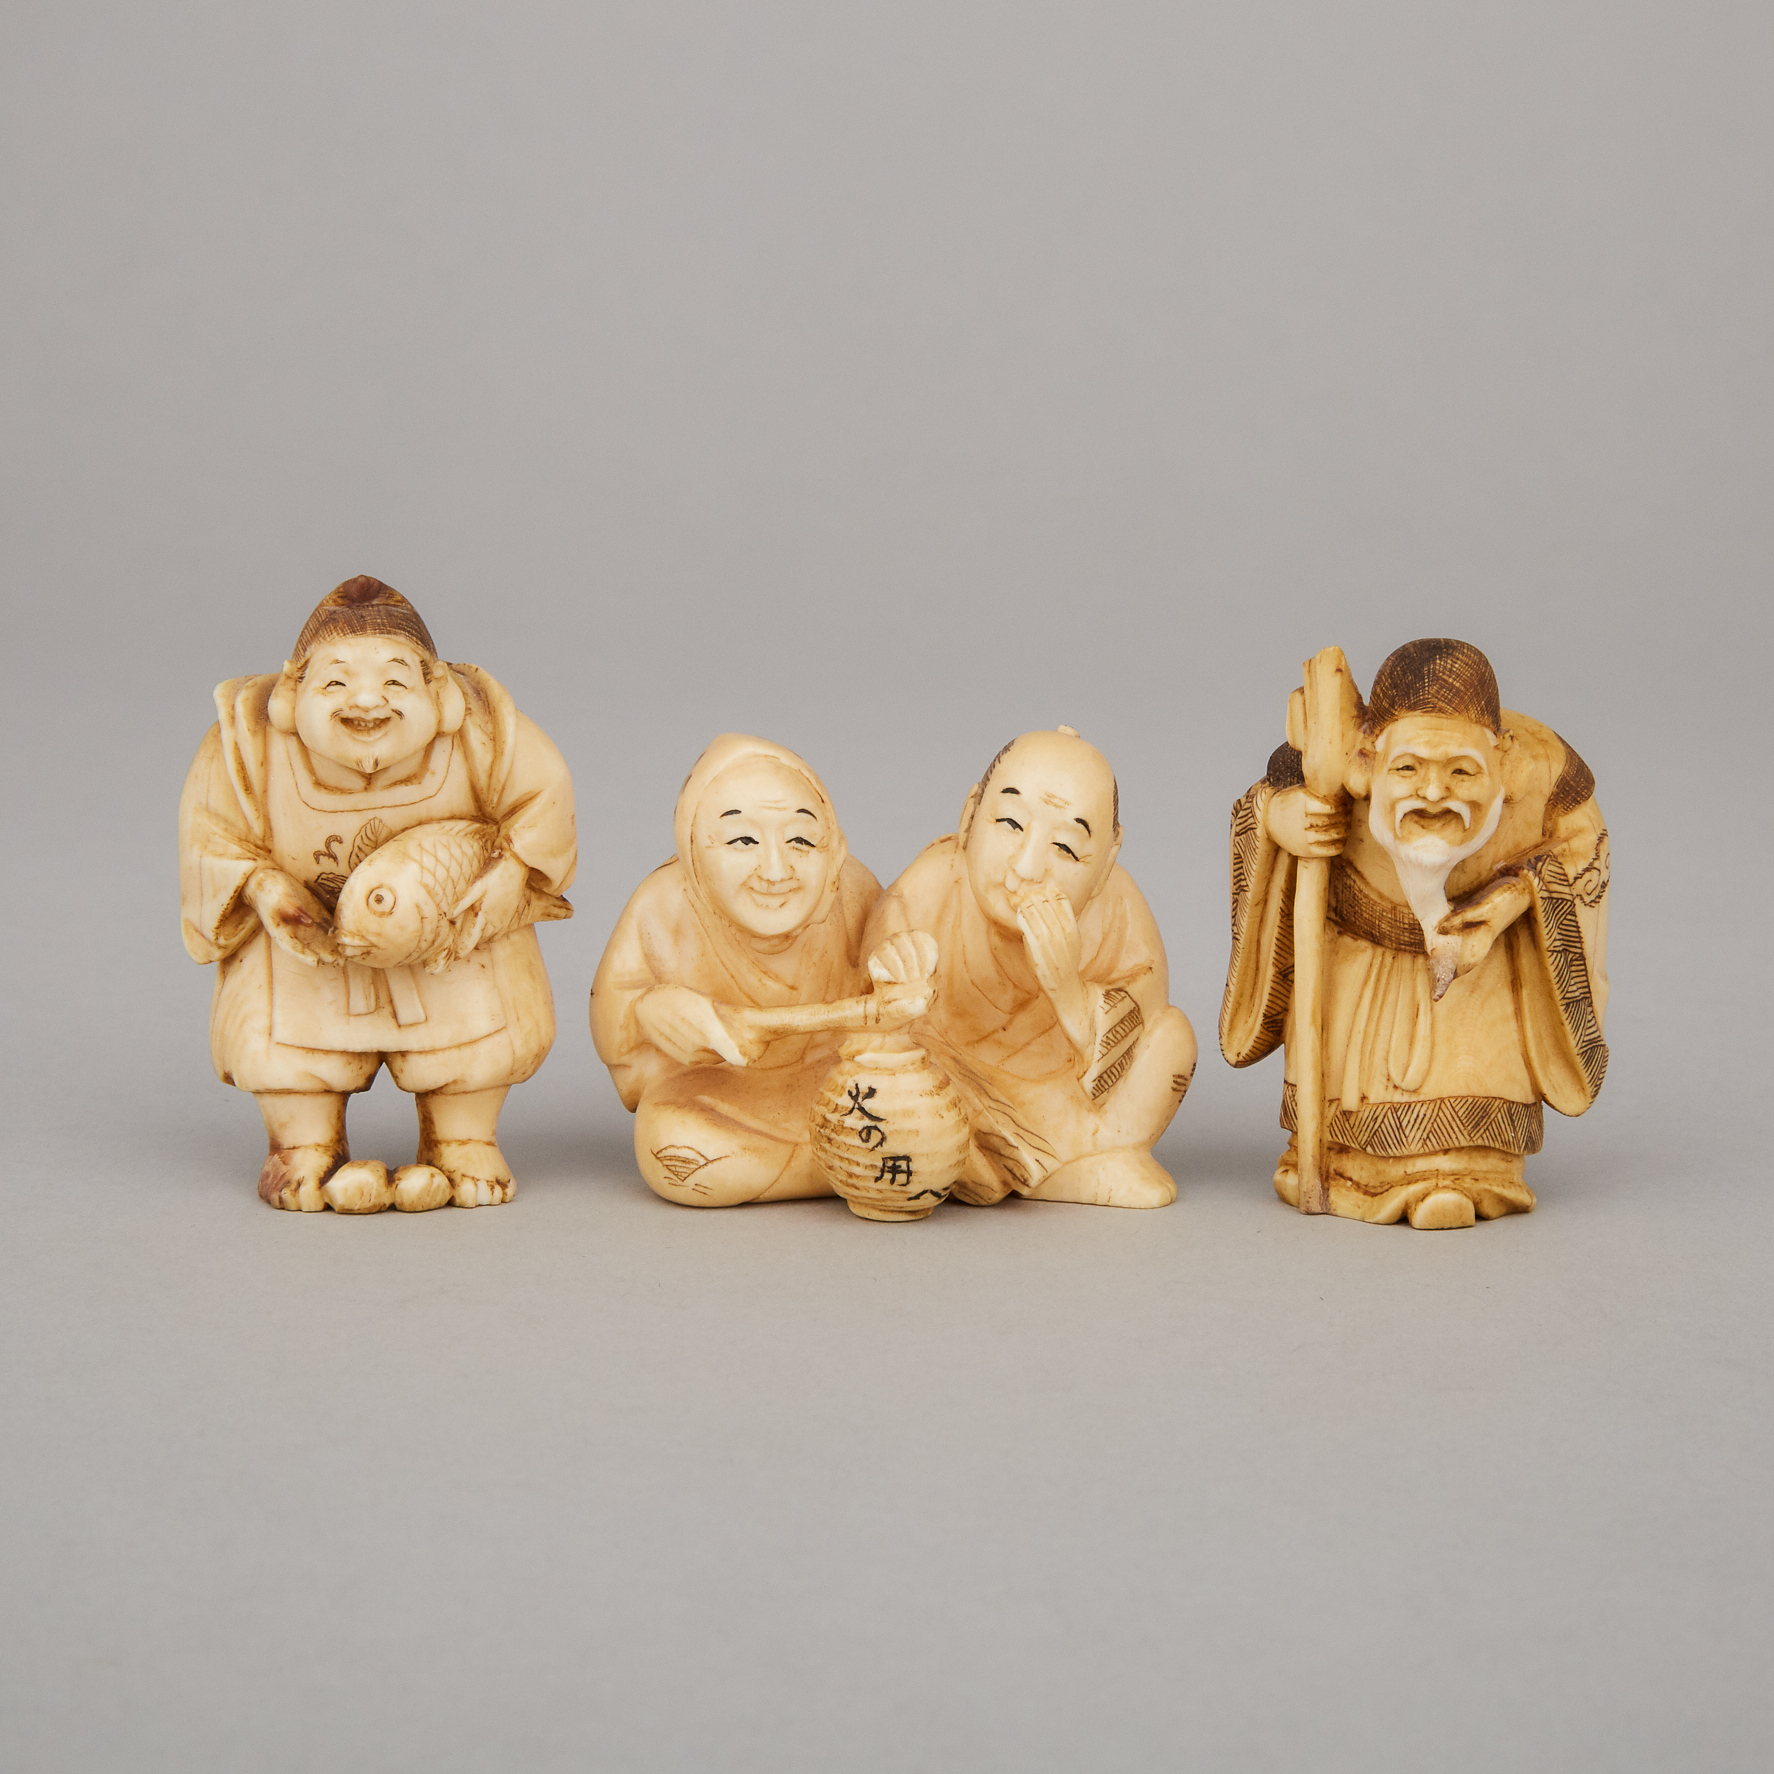 A Group of Three Ivory Carved Netsuke